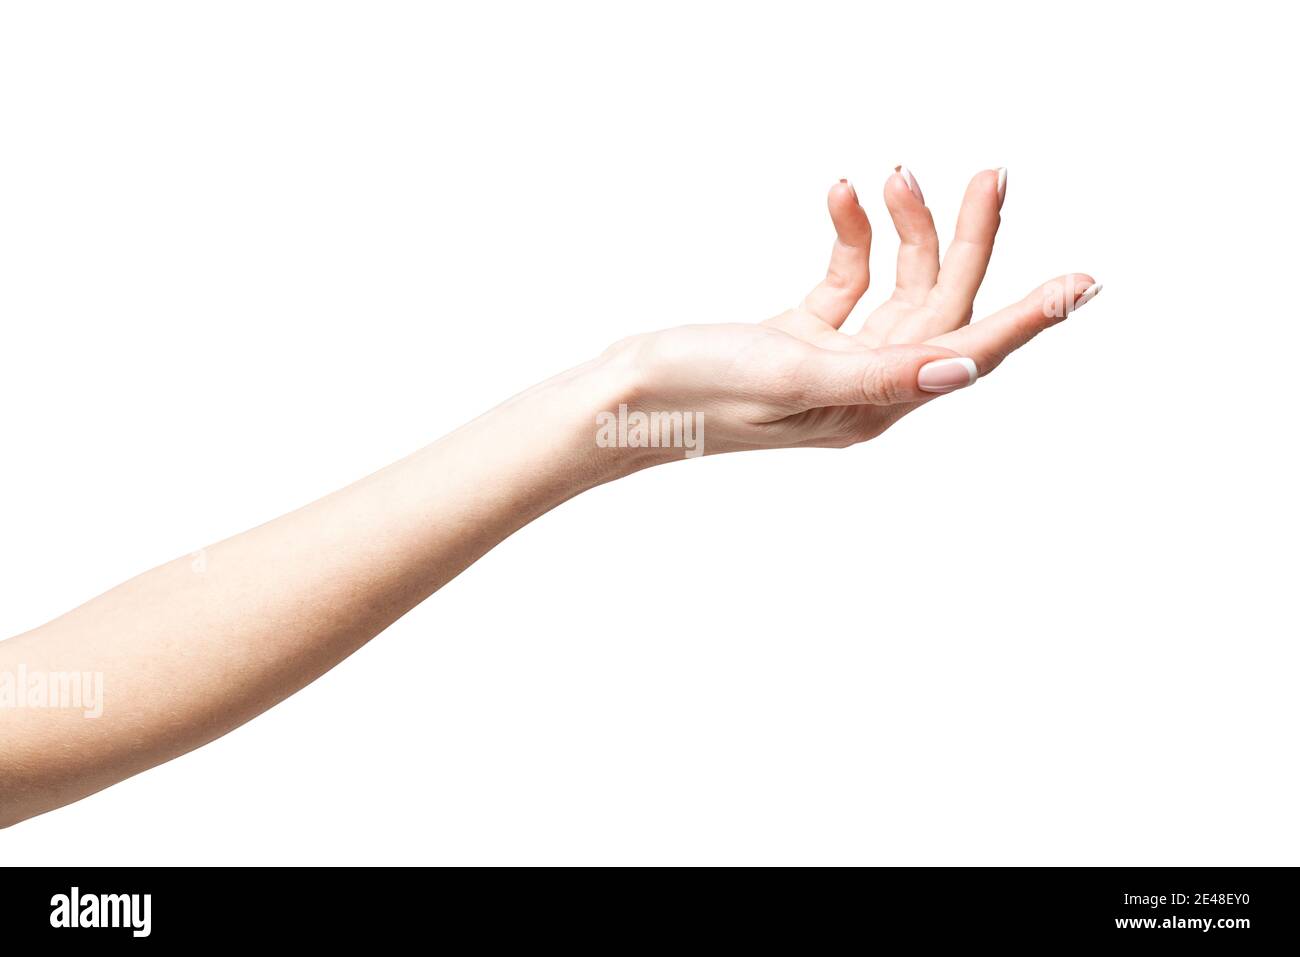 femmina mano che poiting da dito isolato su sfondo bianco con tracciato di ritaglio Foto Stock